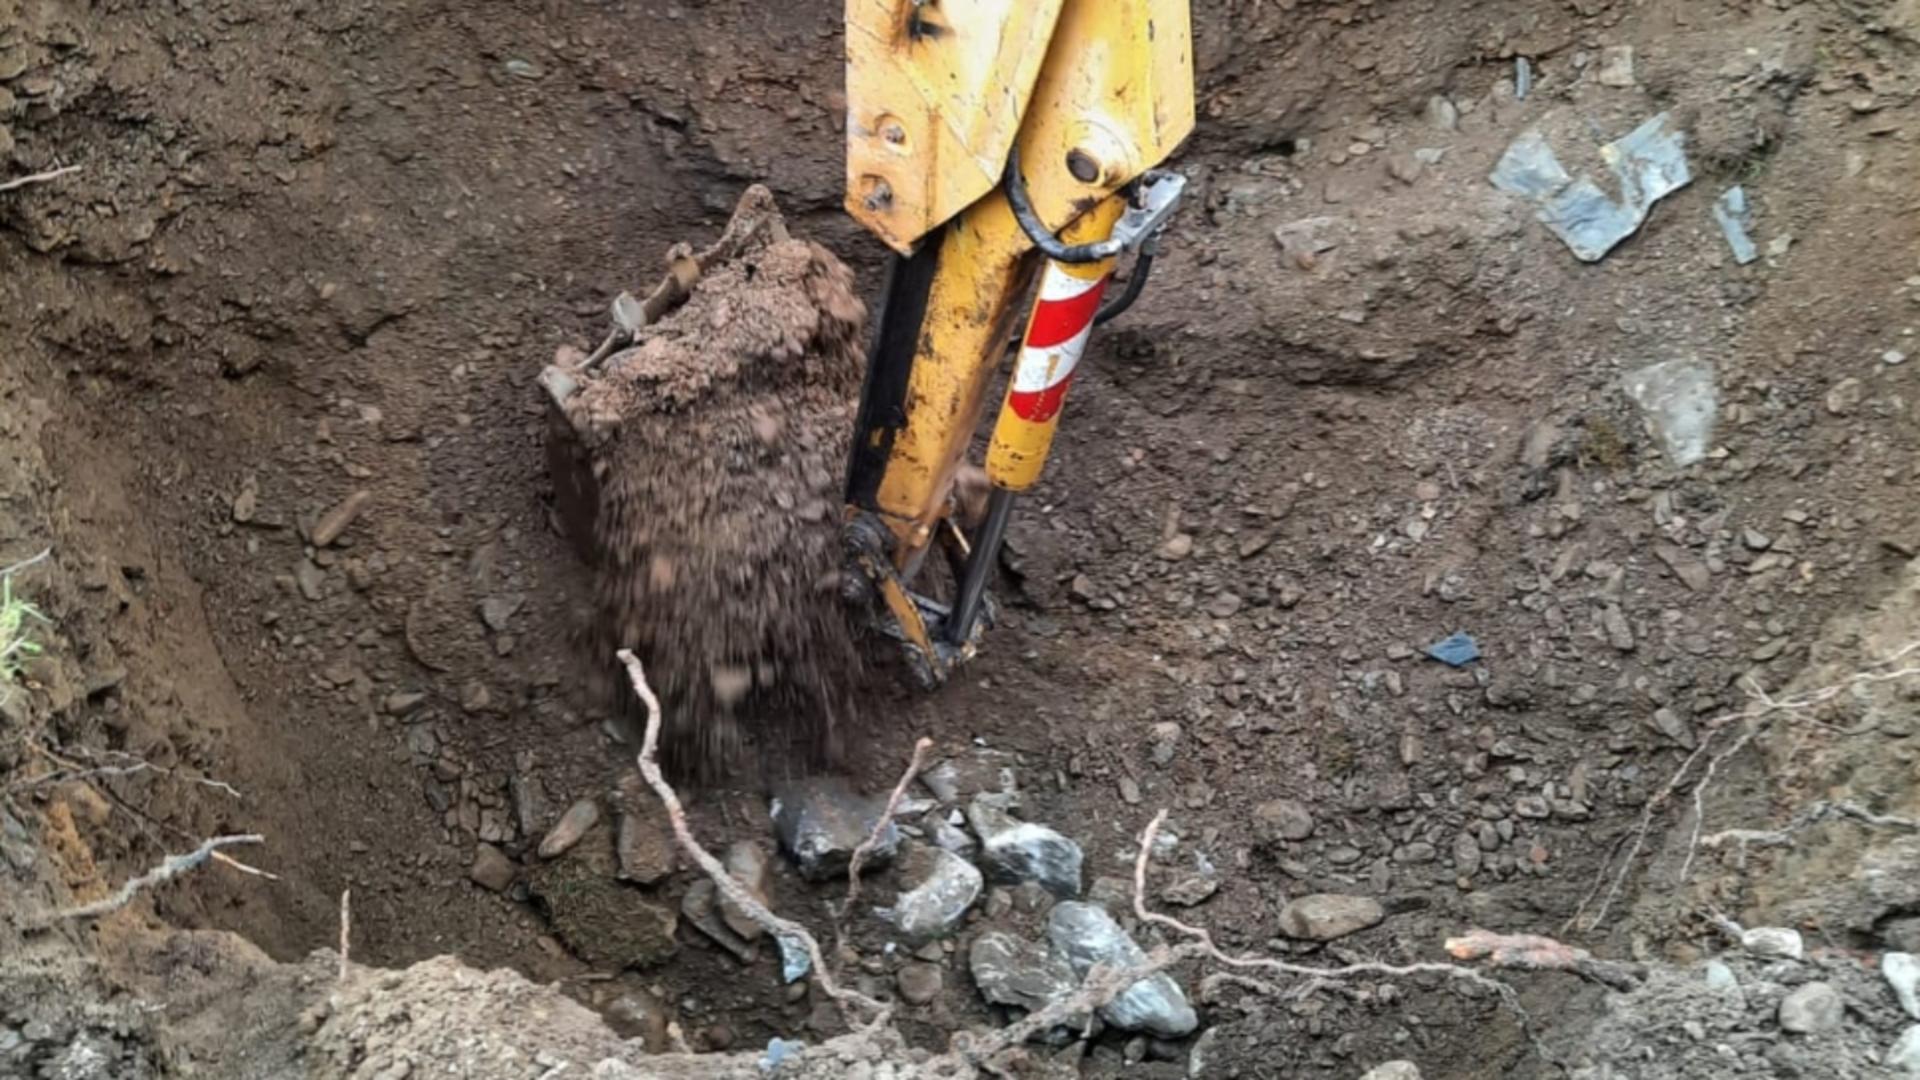 A scăpat cu viață după 8 ore sub un mal de pământ. Intervenție dramatică în județul Suceava - GALERIE FOTO